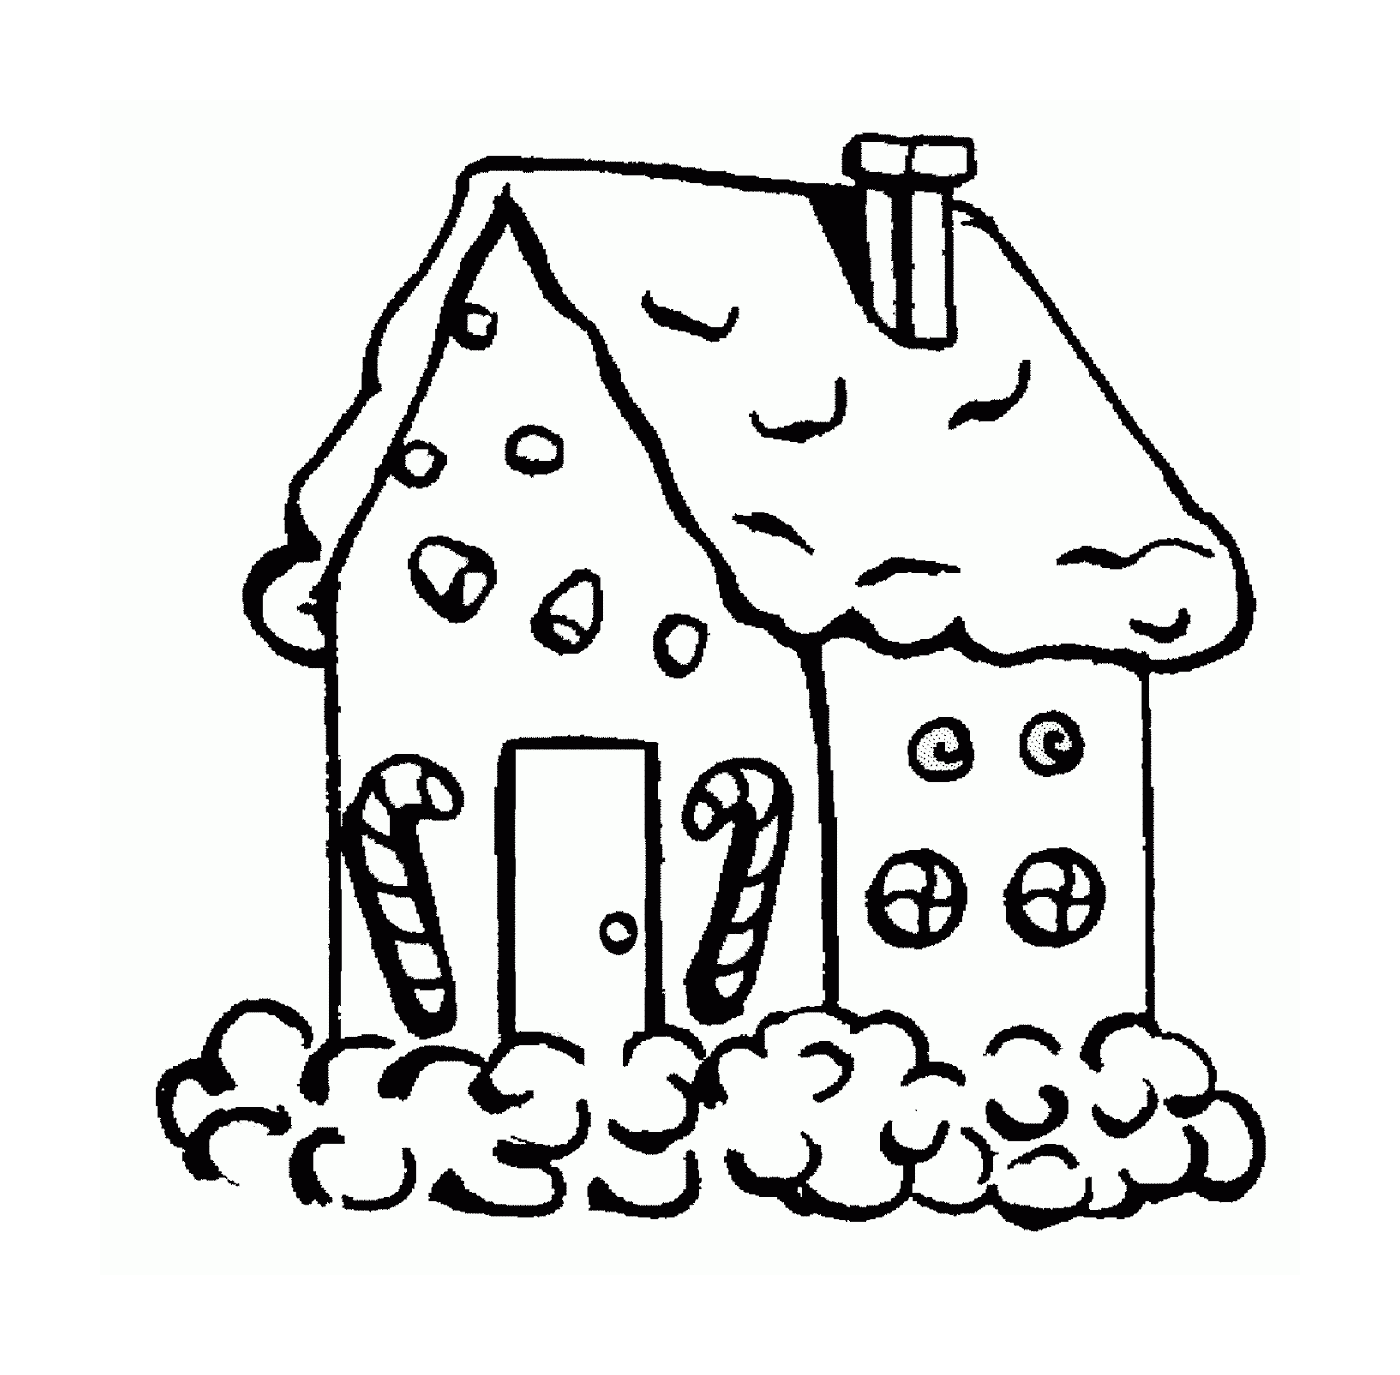  由雪覆盖的姜饼制成的房子 